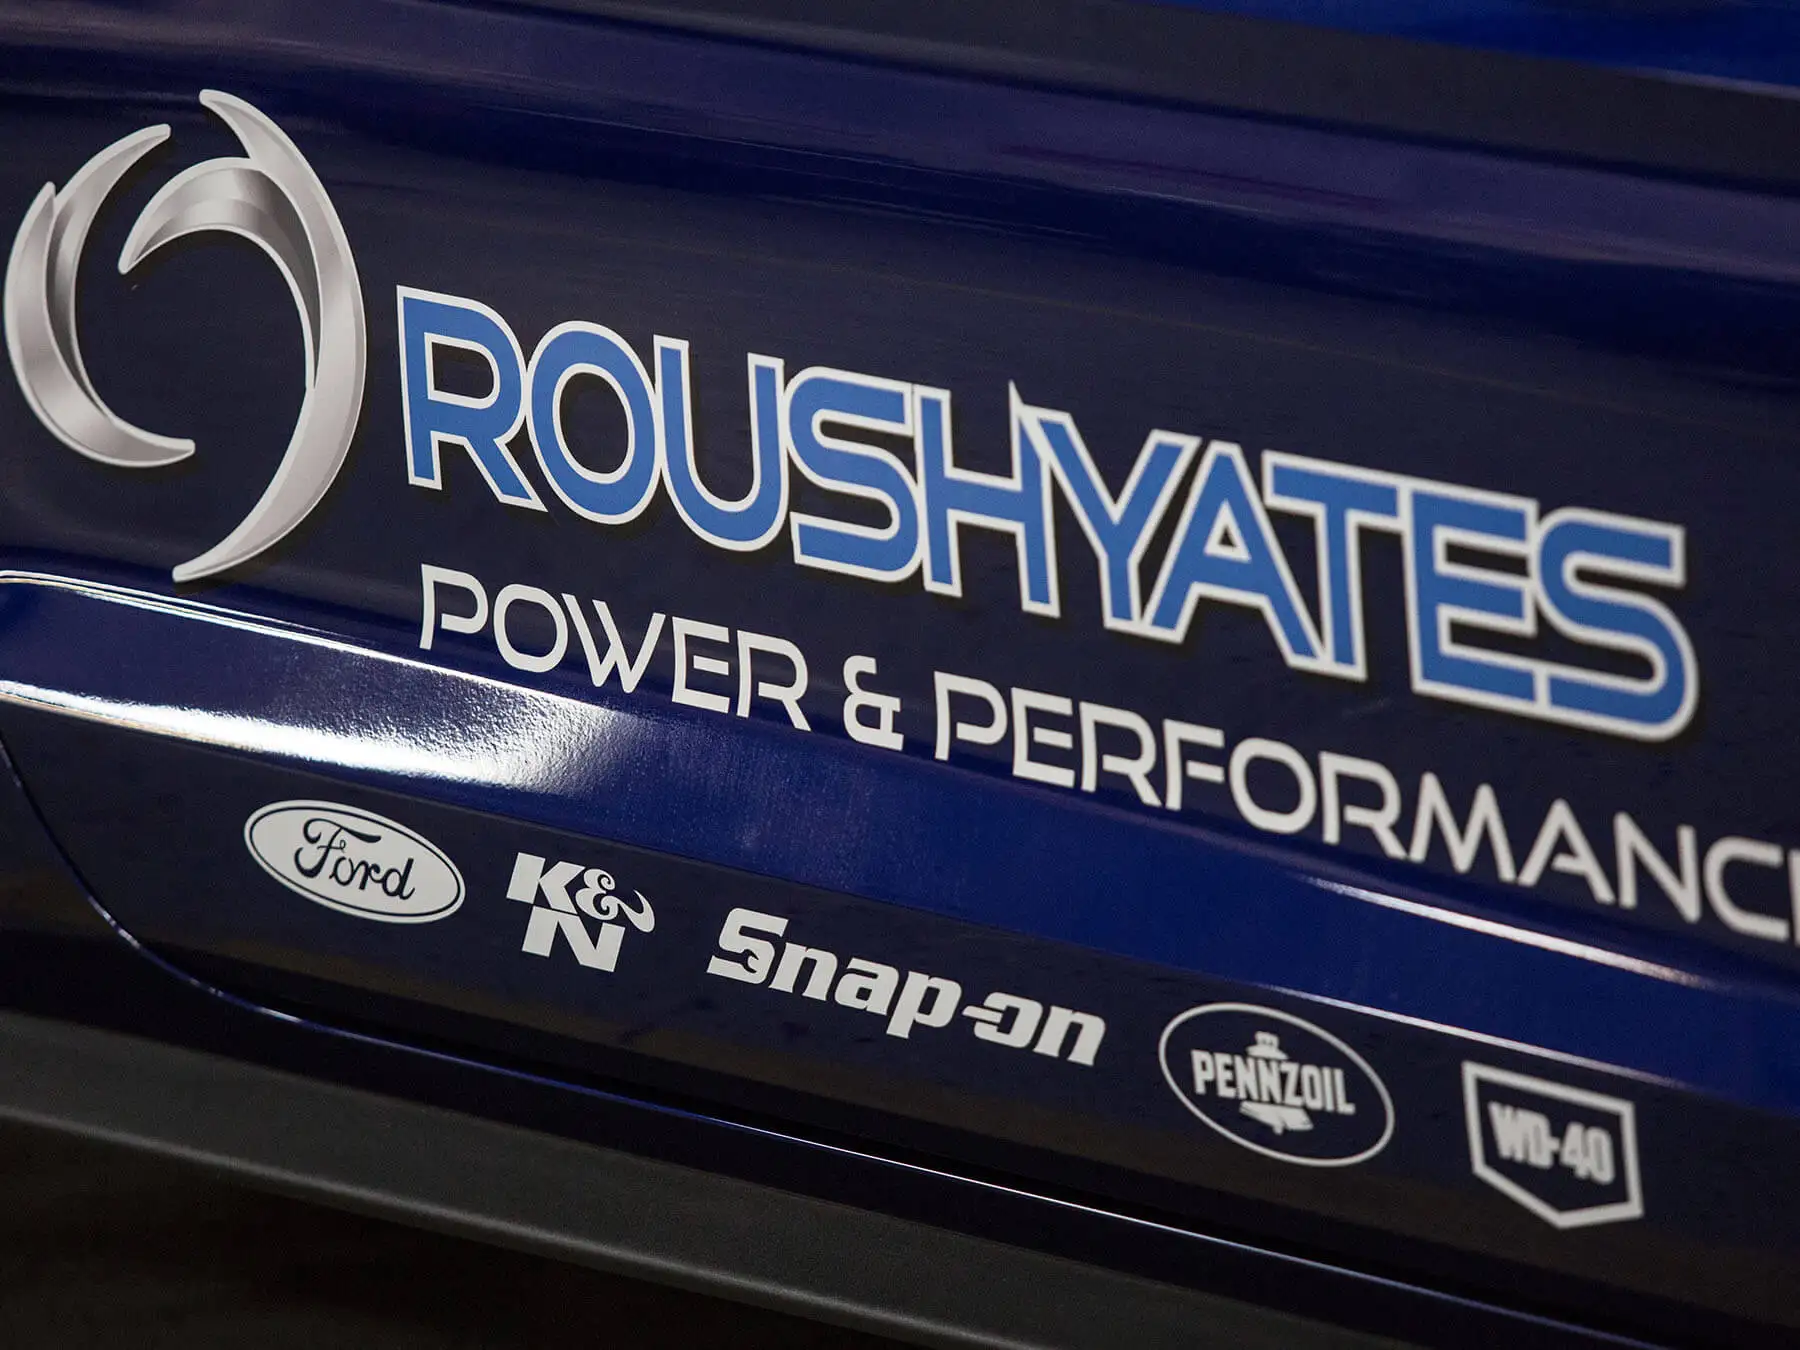 Close up on the blue roushyates logo